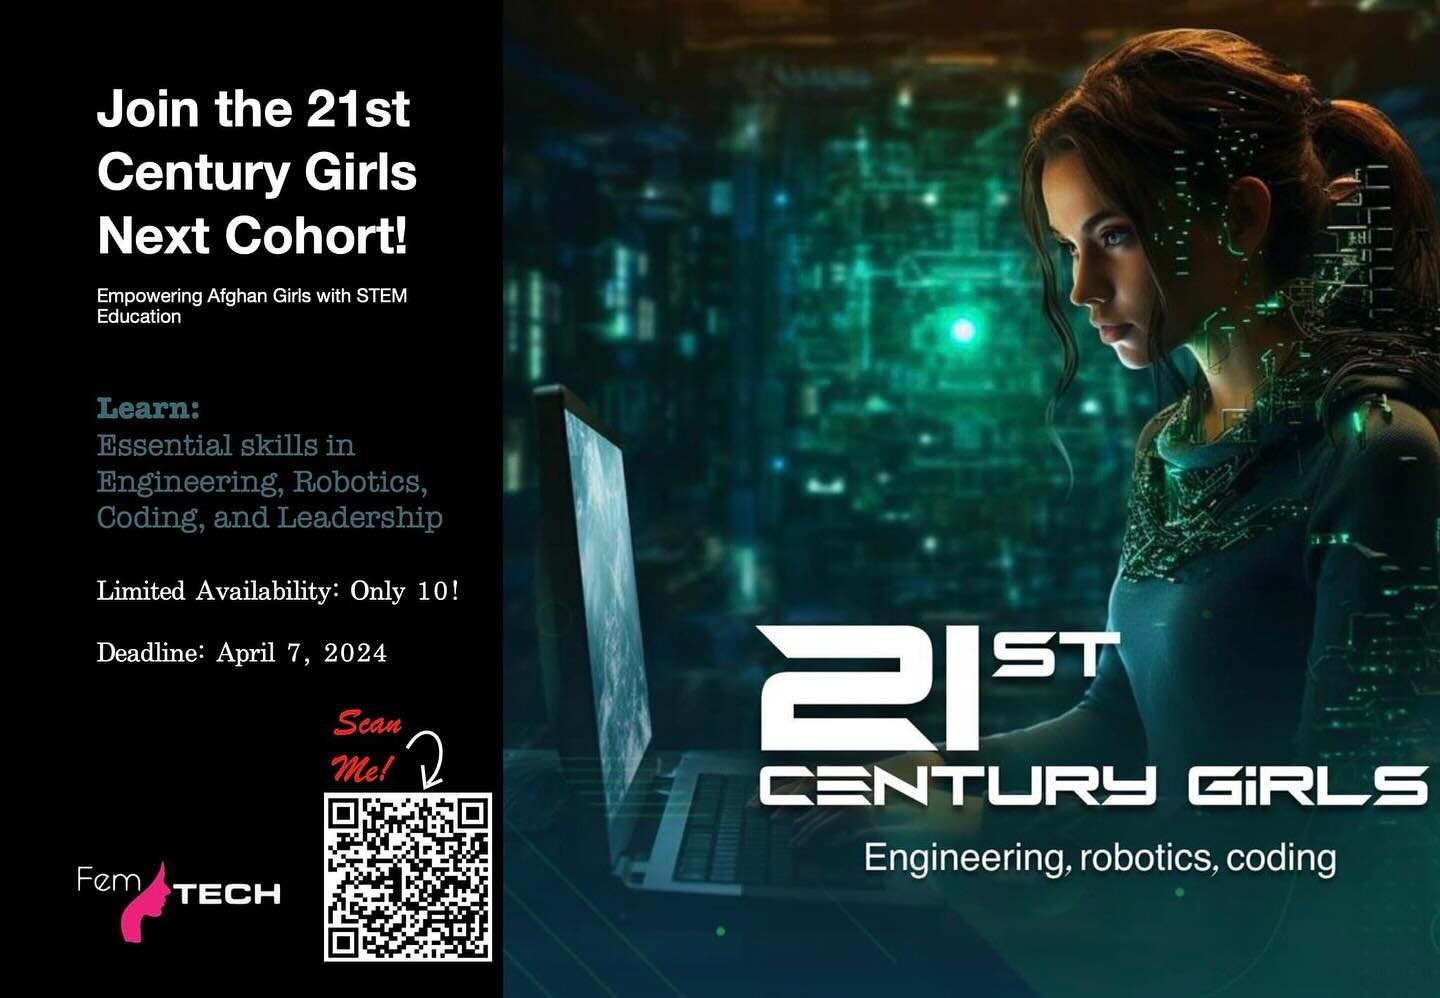 اطلاعیه!! 

 فرصت برای دختران افغان - به برنامه دختران قرن بیست و یکم بپیوندید!

 آیا شما علاقه مند هستید مهارت های اساسی در مهندسی، رباتیک، کدنویسی، رهبری و غیره را بیاموزید؟

 پس به این برنامه آموزشی توسط نهاد دختران قرن بیست و یکم درخواست دهید! ای